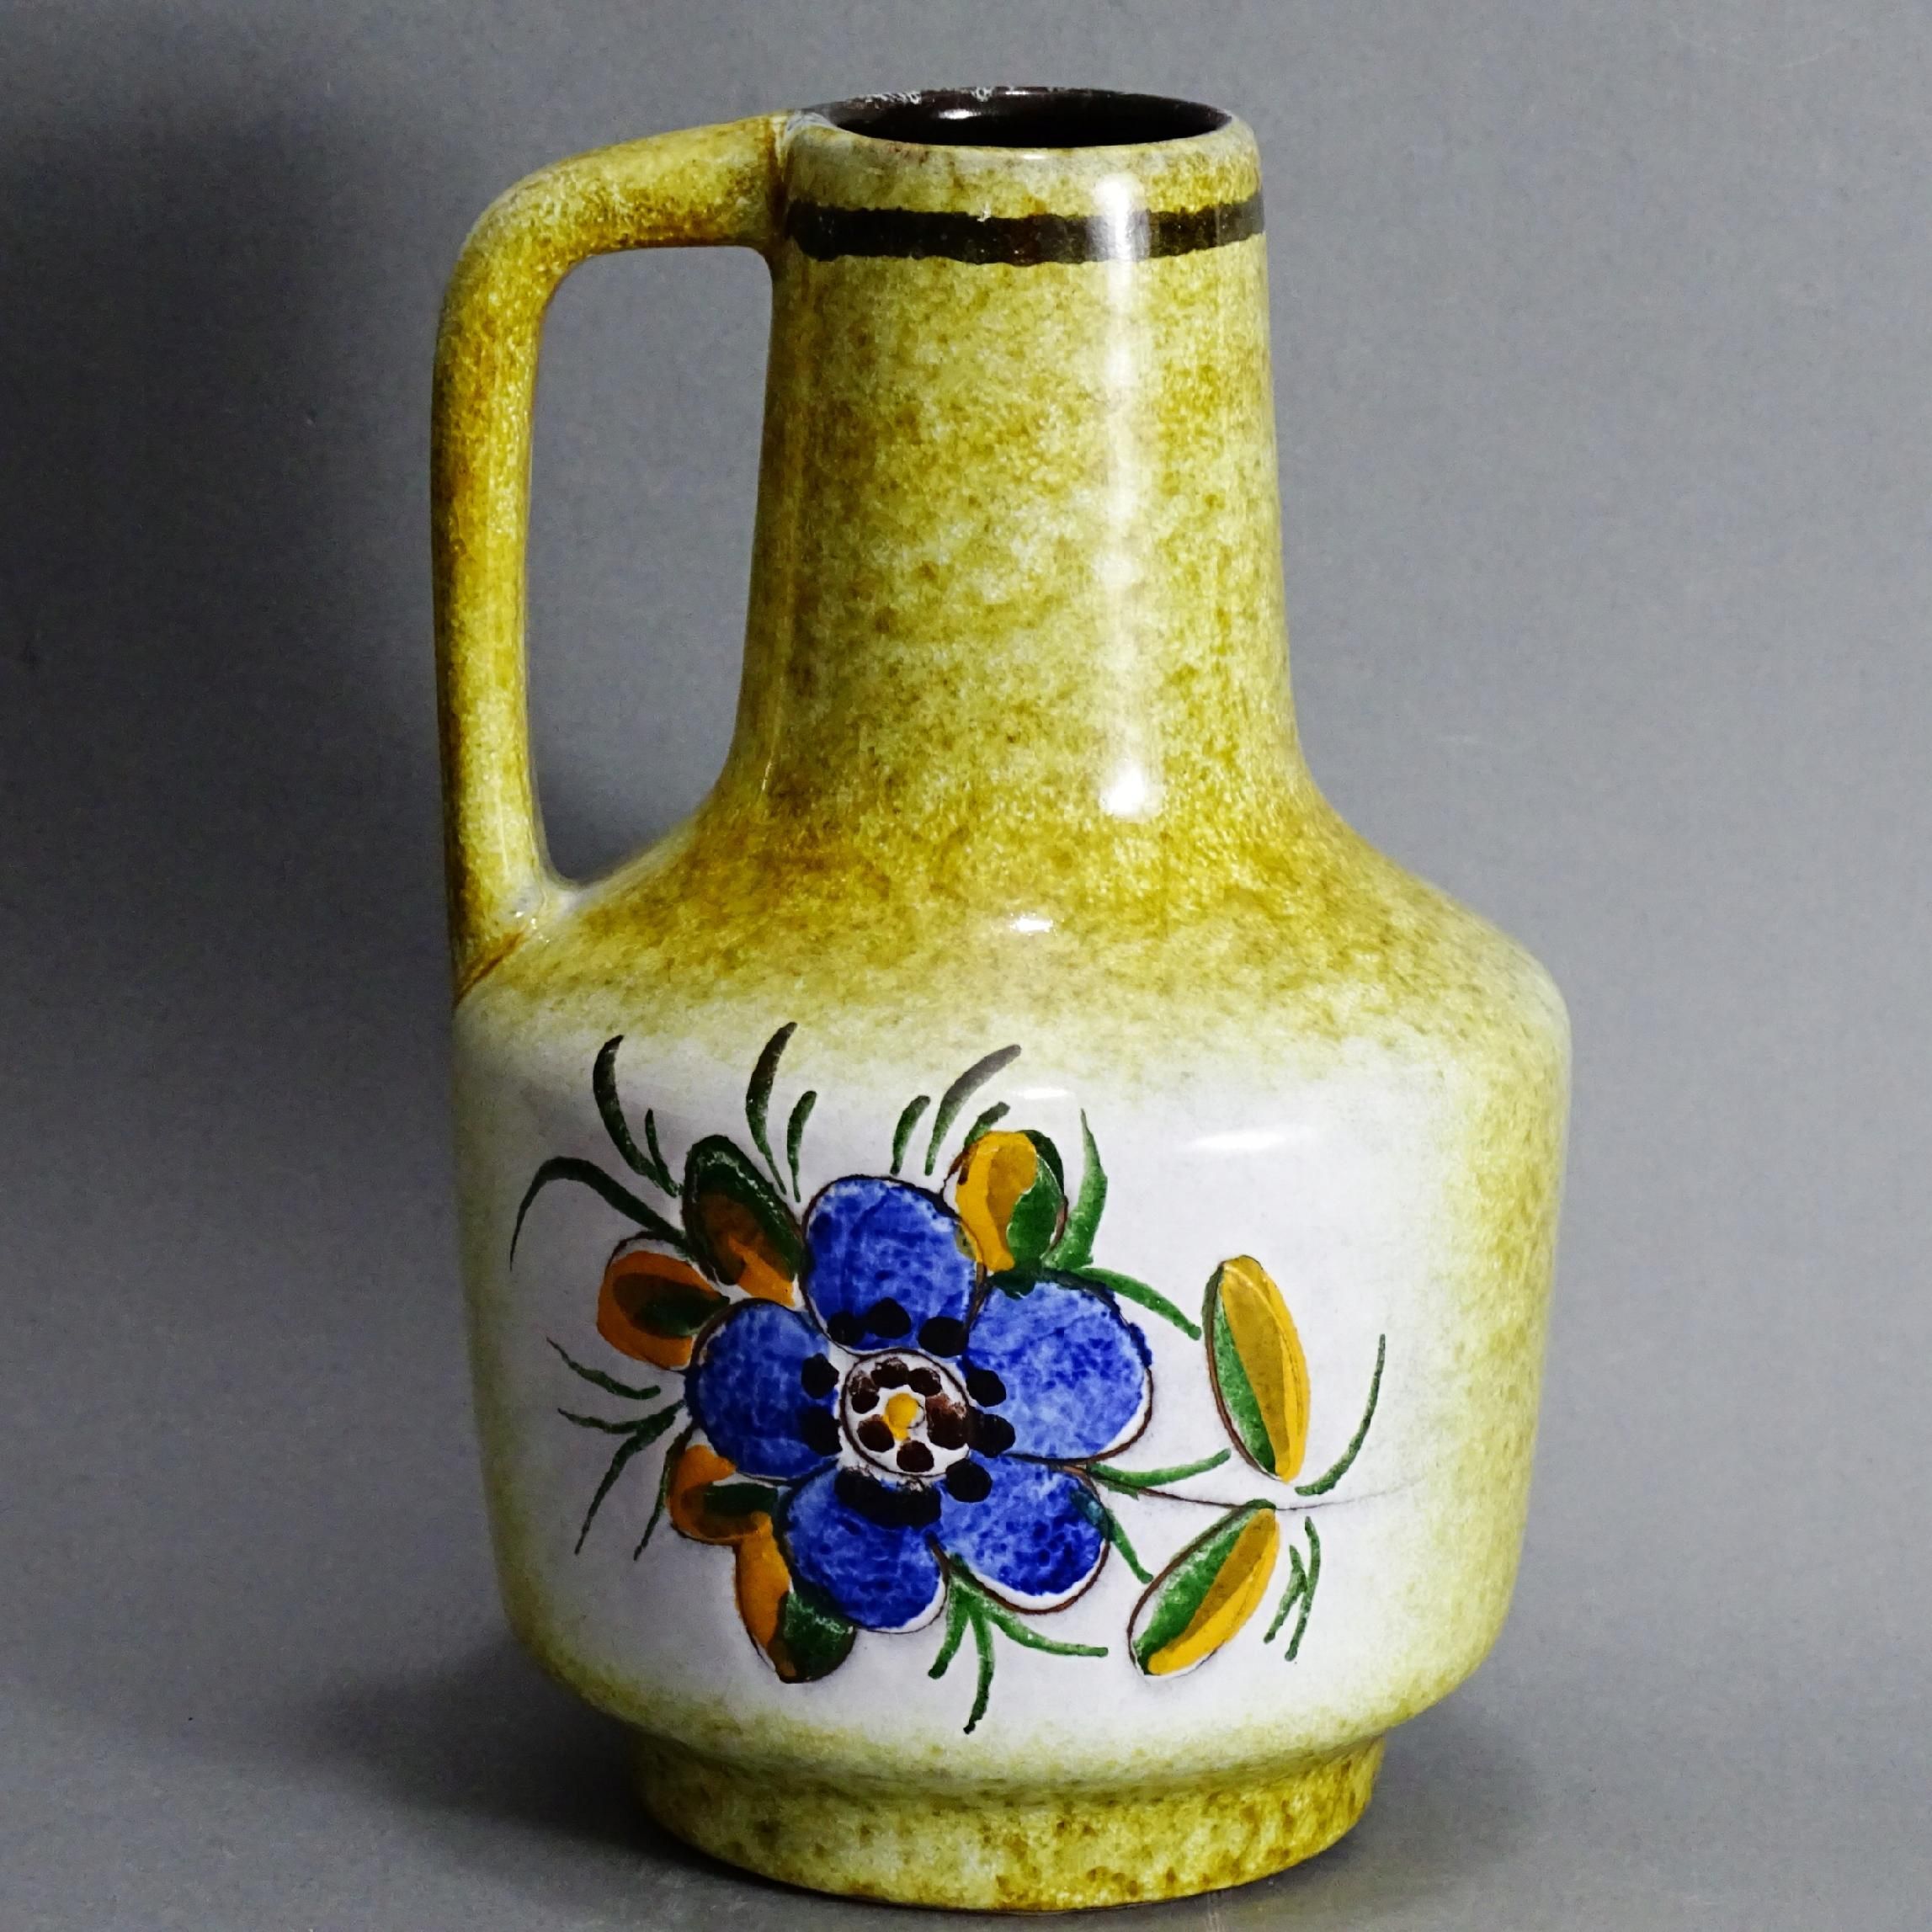 piękny recznie malowany dzbanek wazon ceramiczny lata 60/70